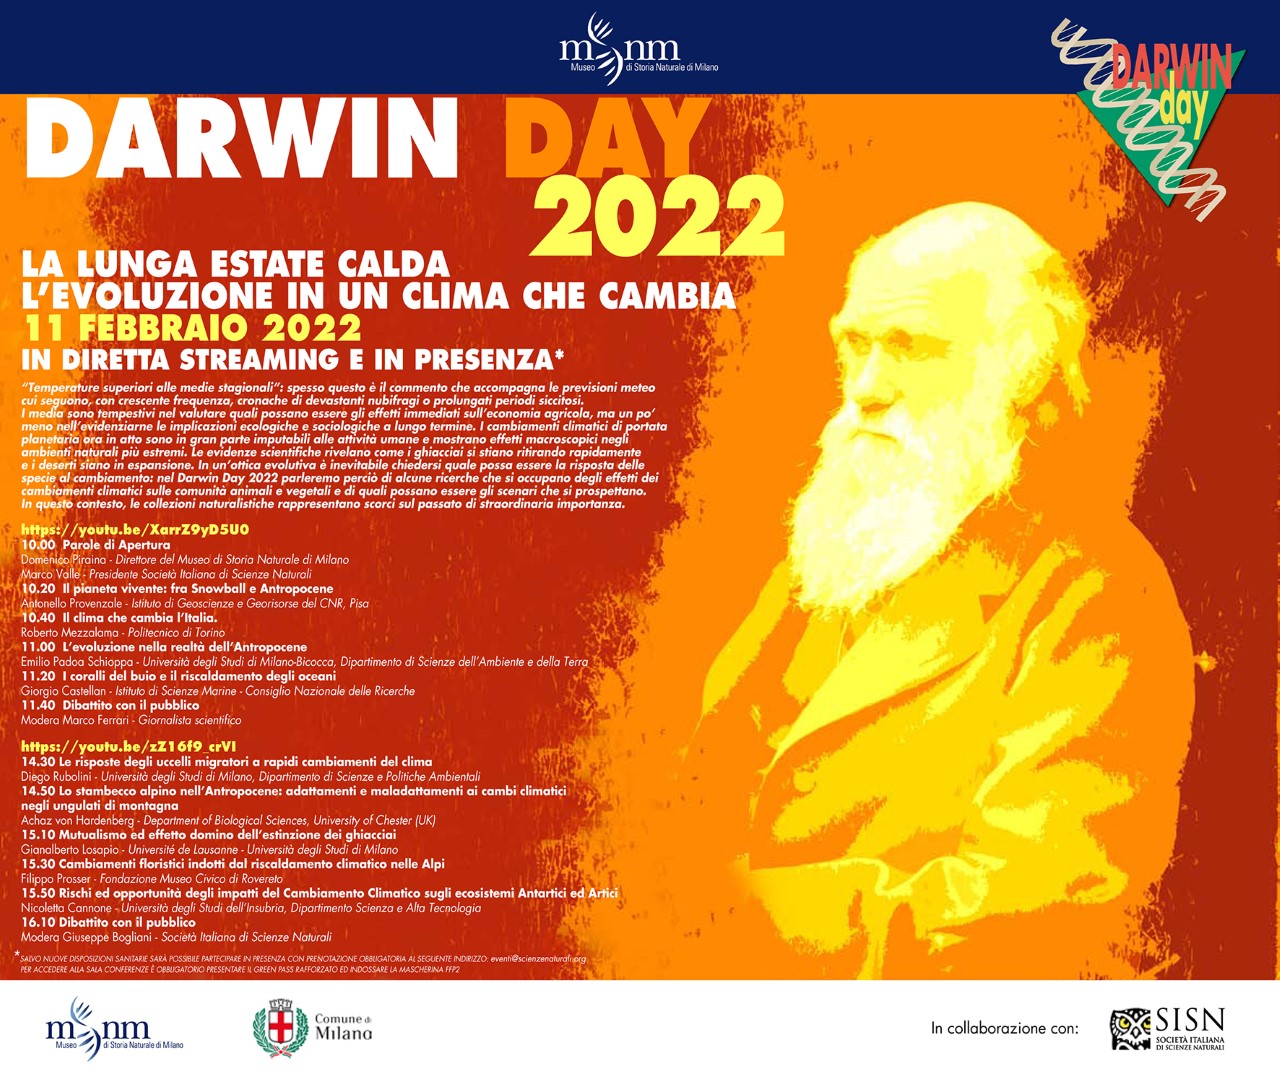 DARWIN DAY 2022